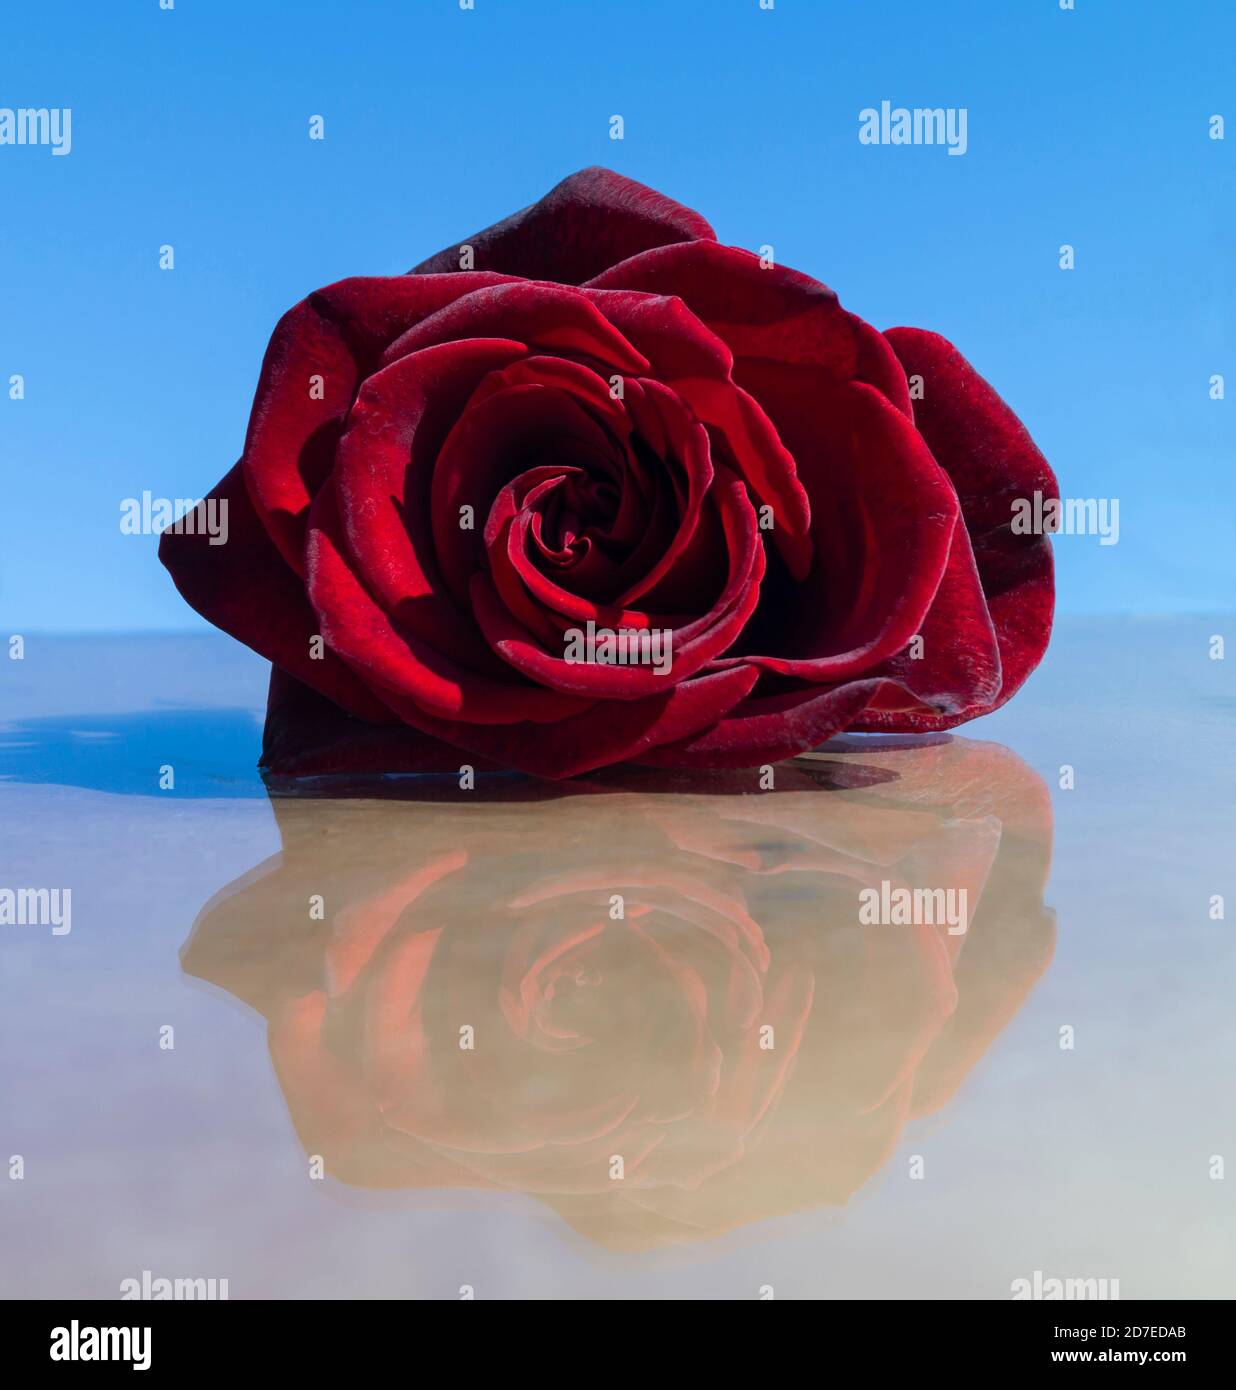 La rose rouge avec réflexion sur fond bleu ciel. Beauté dans la nature, belle fleur à la journée solaire Banque D'Images